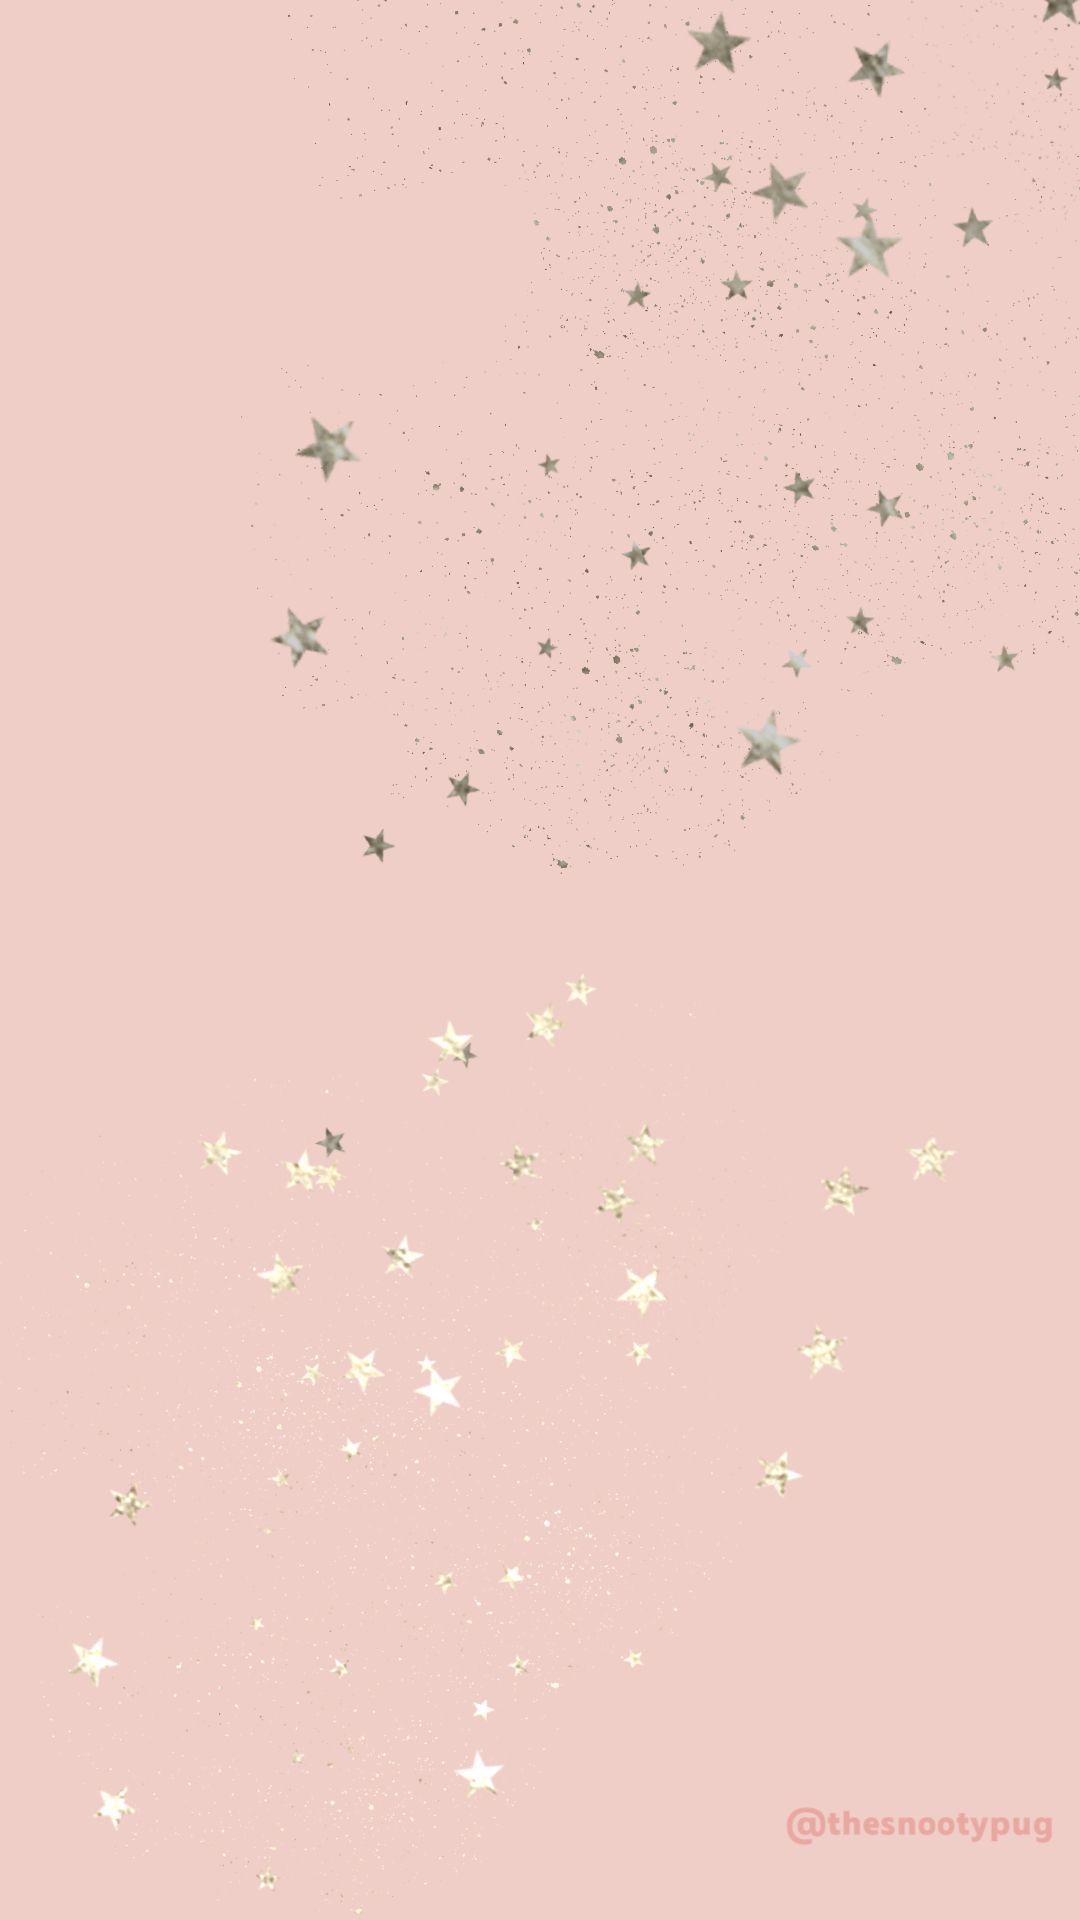 Pink star wallpaper wallpaper. Star wallpaper